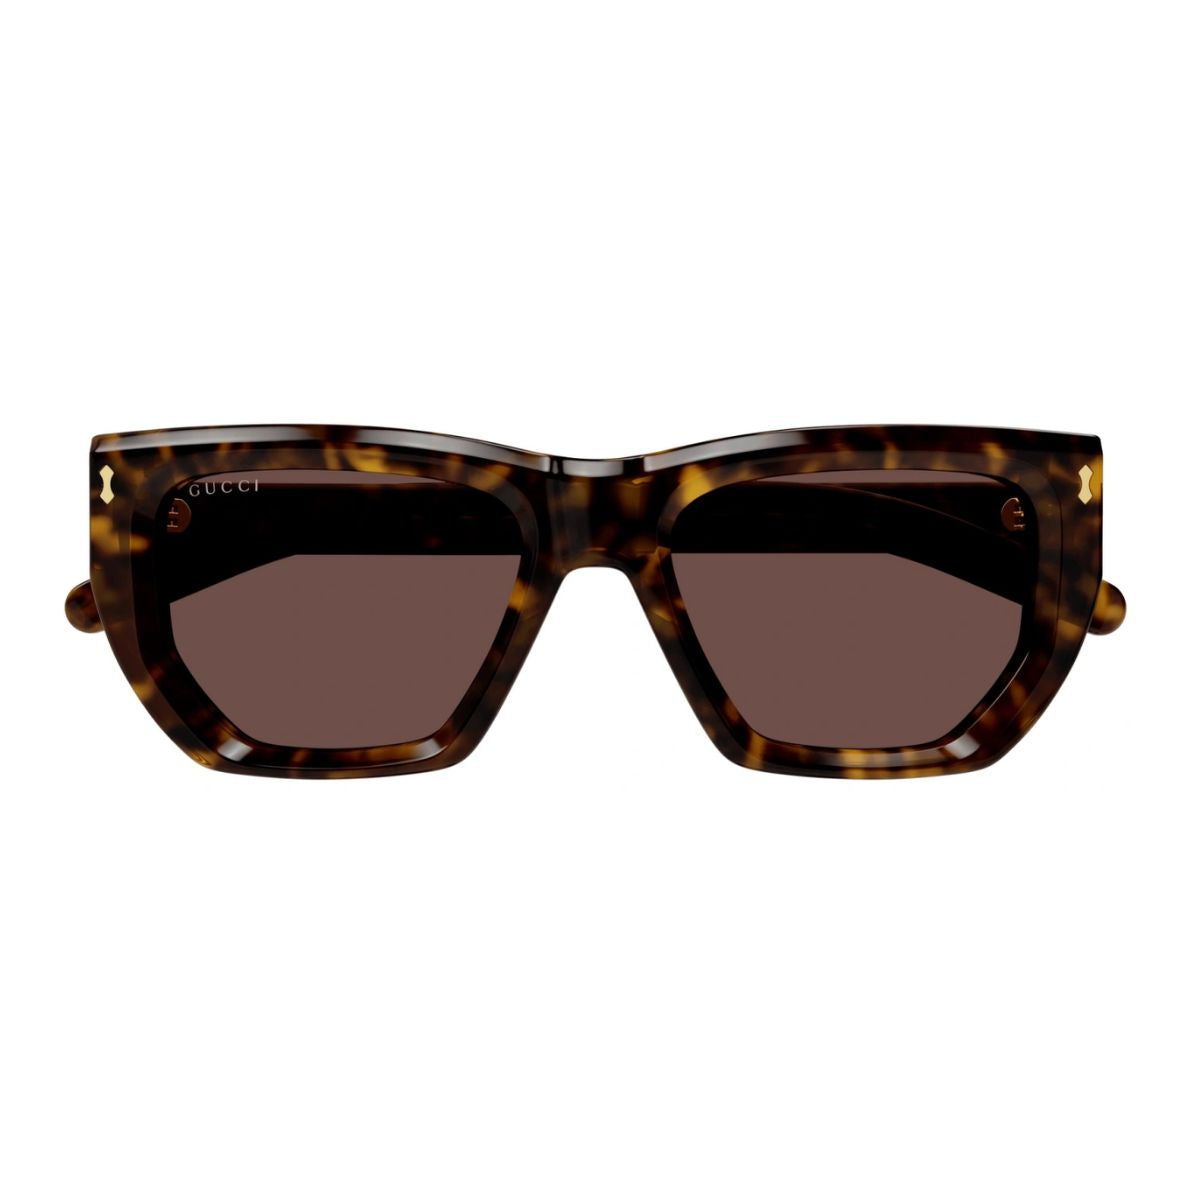 "Gucci Frames GG1502S 002: Elegance Redefined"